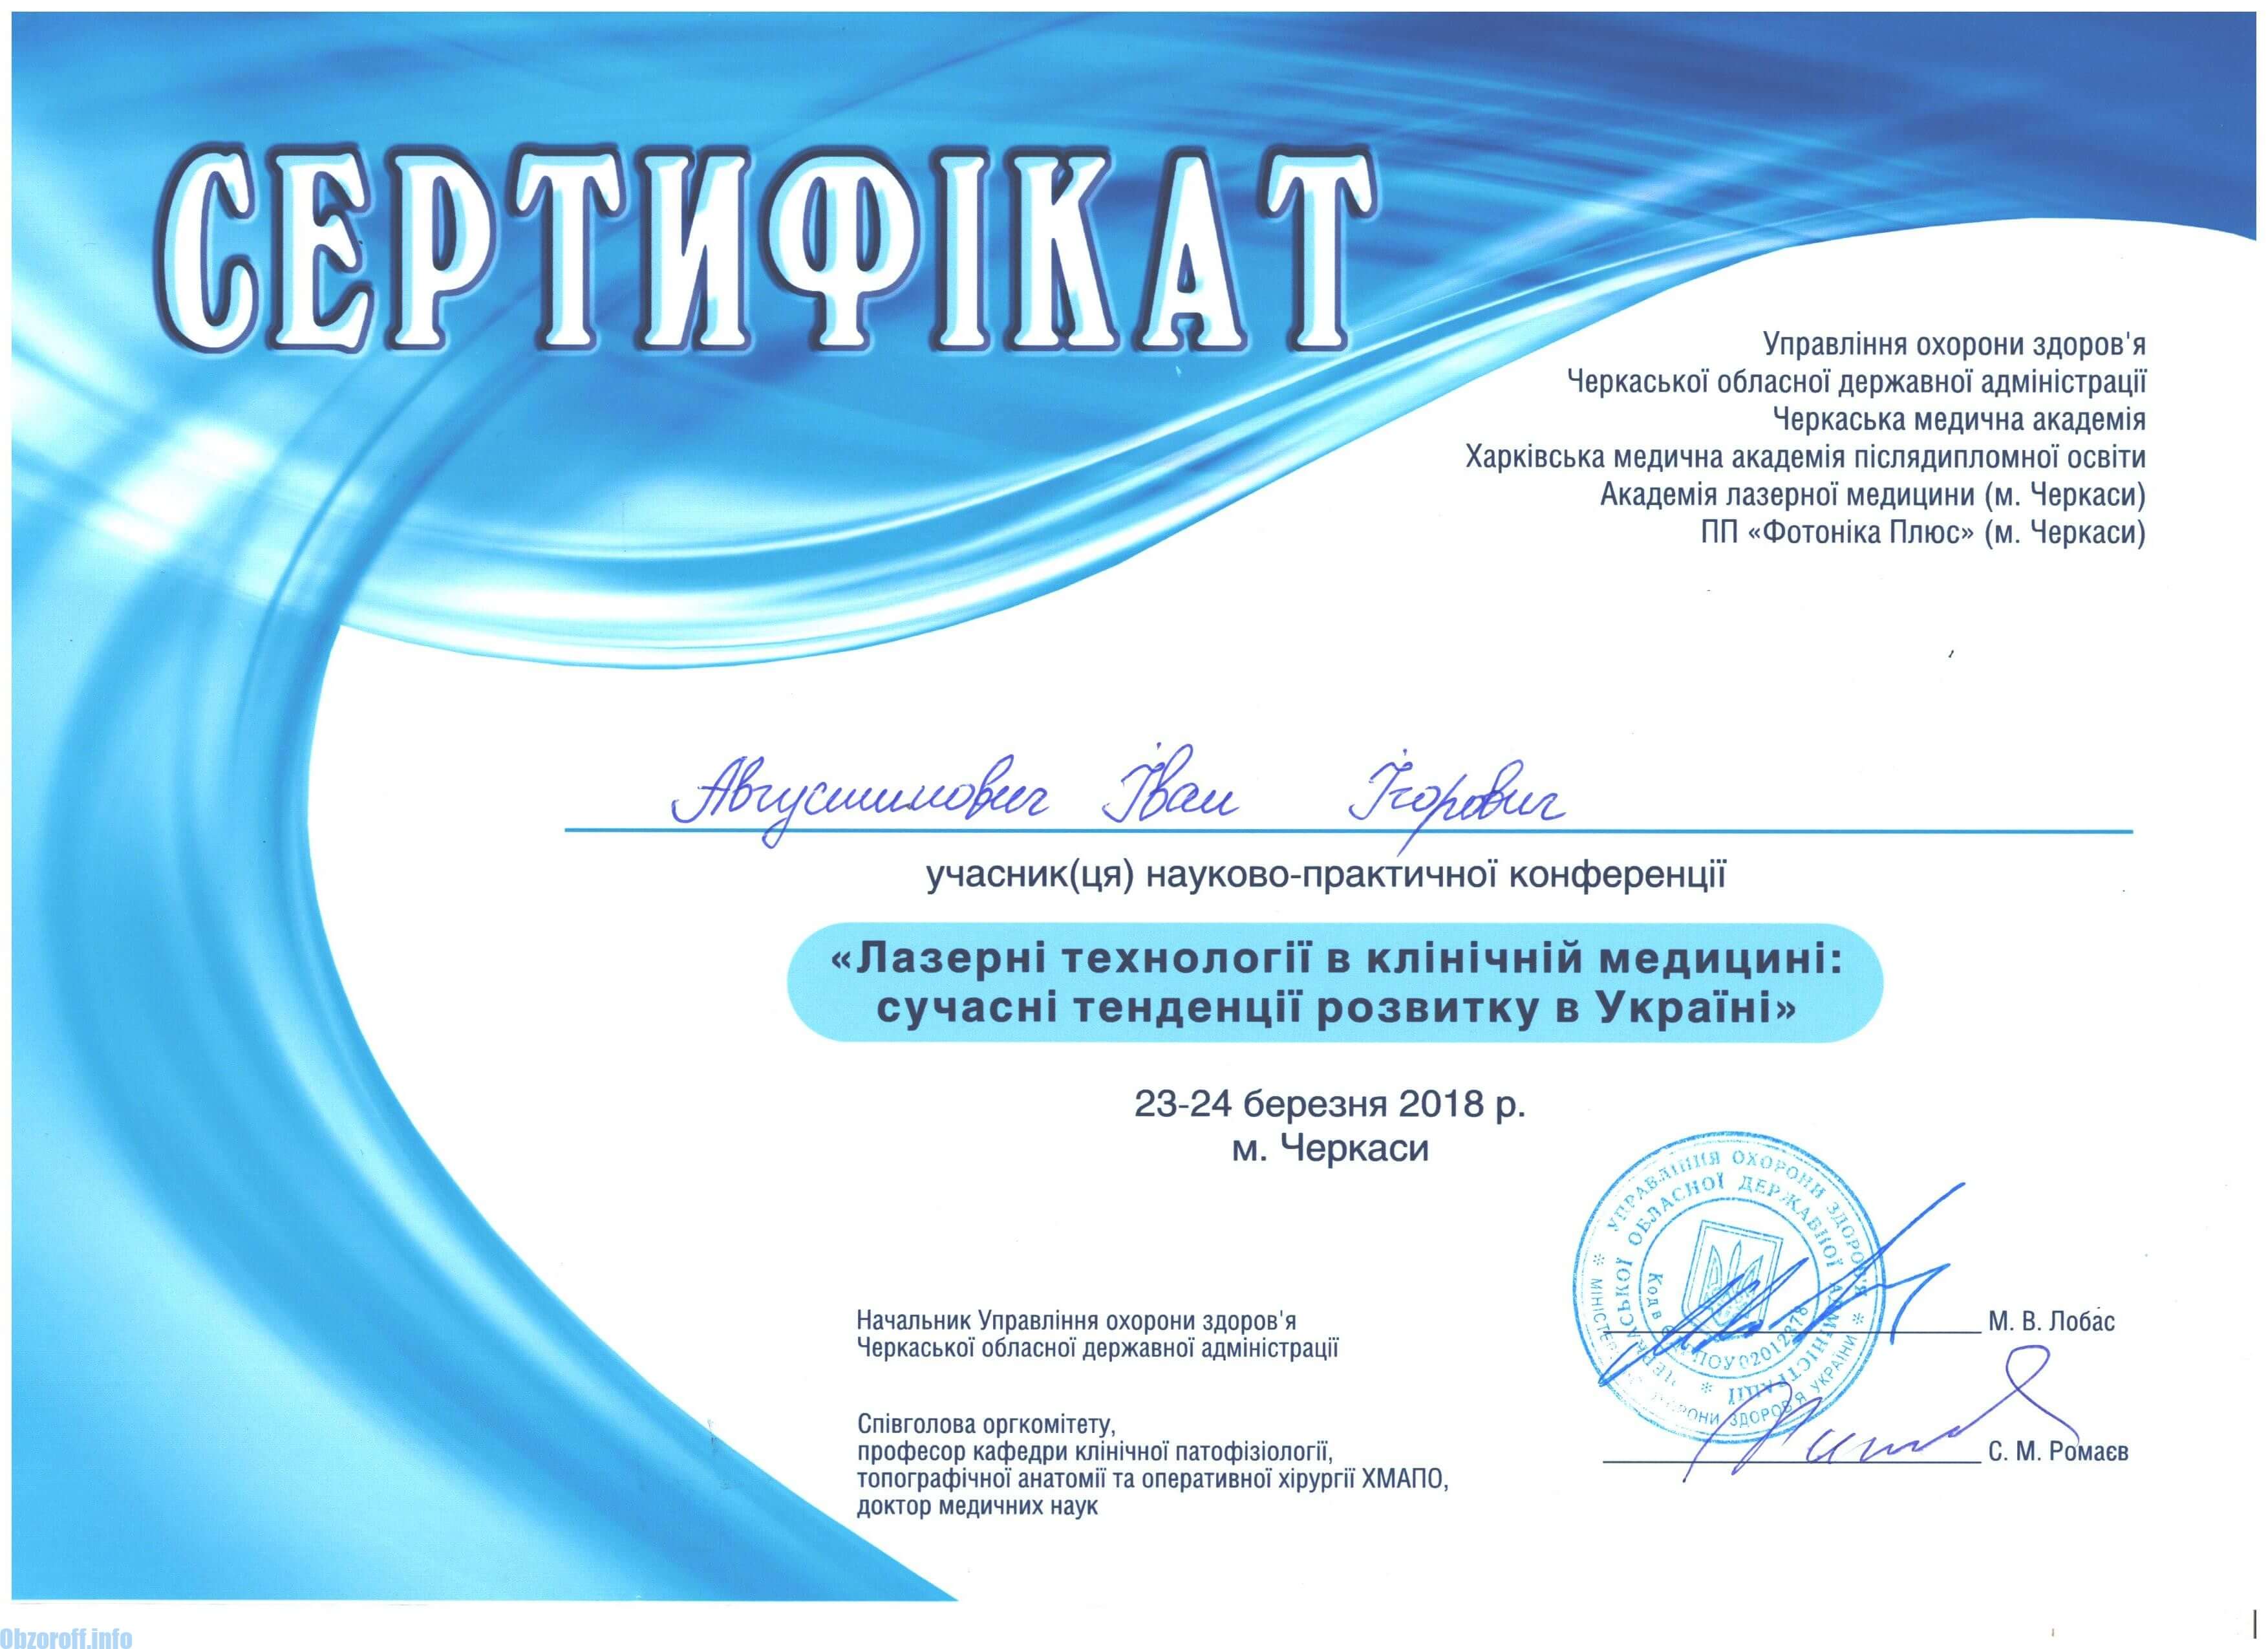 Сертификат ласерски технологии во клиничката медицина